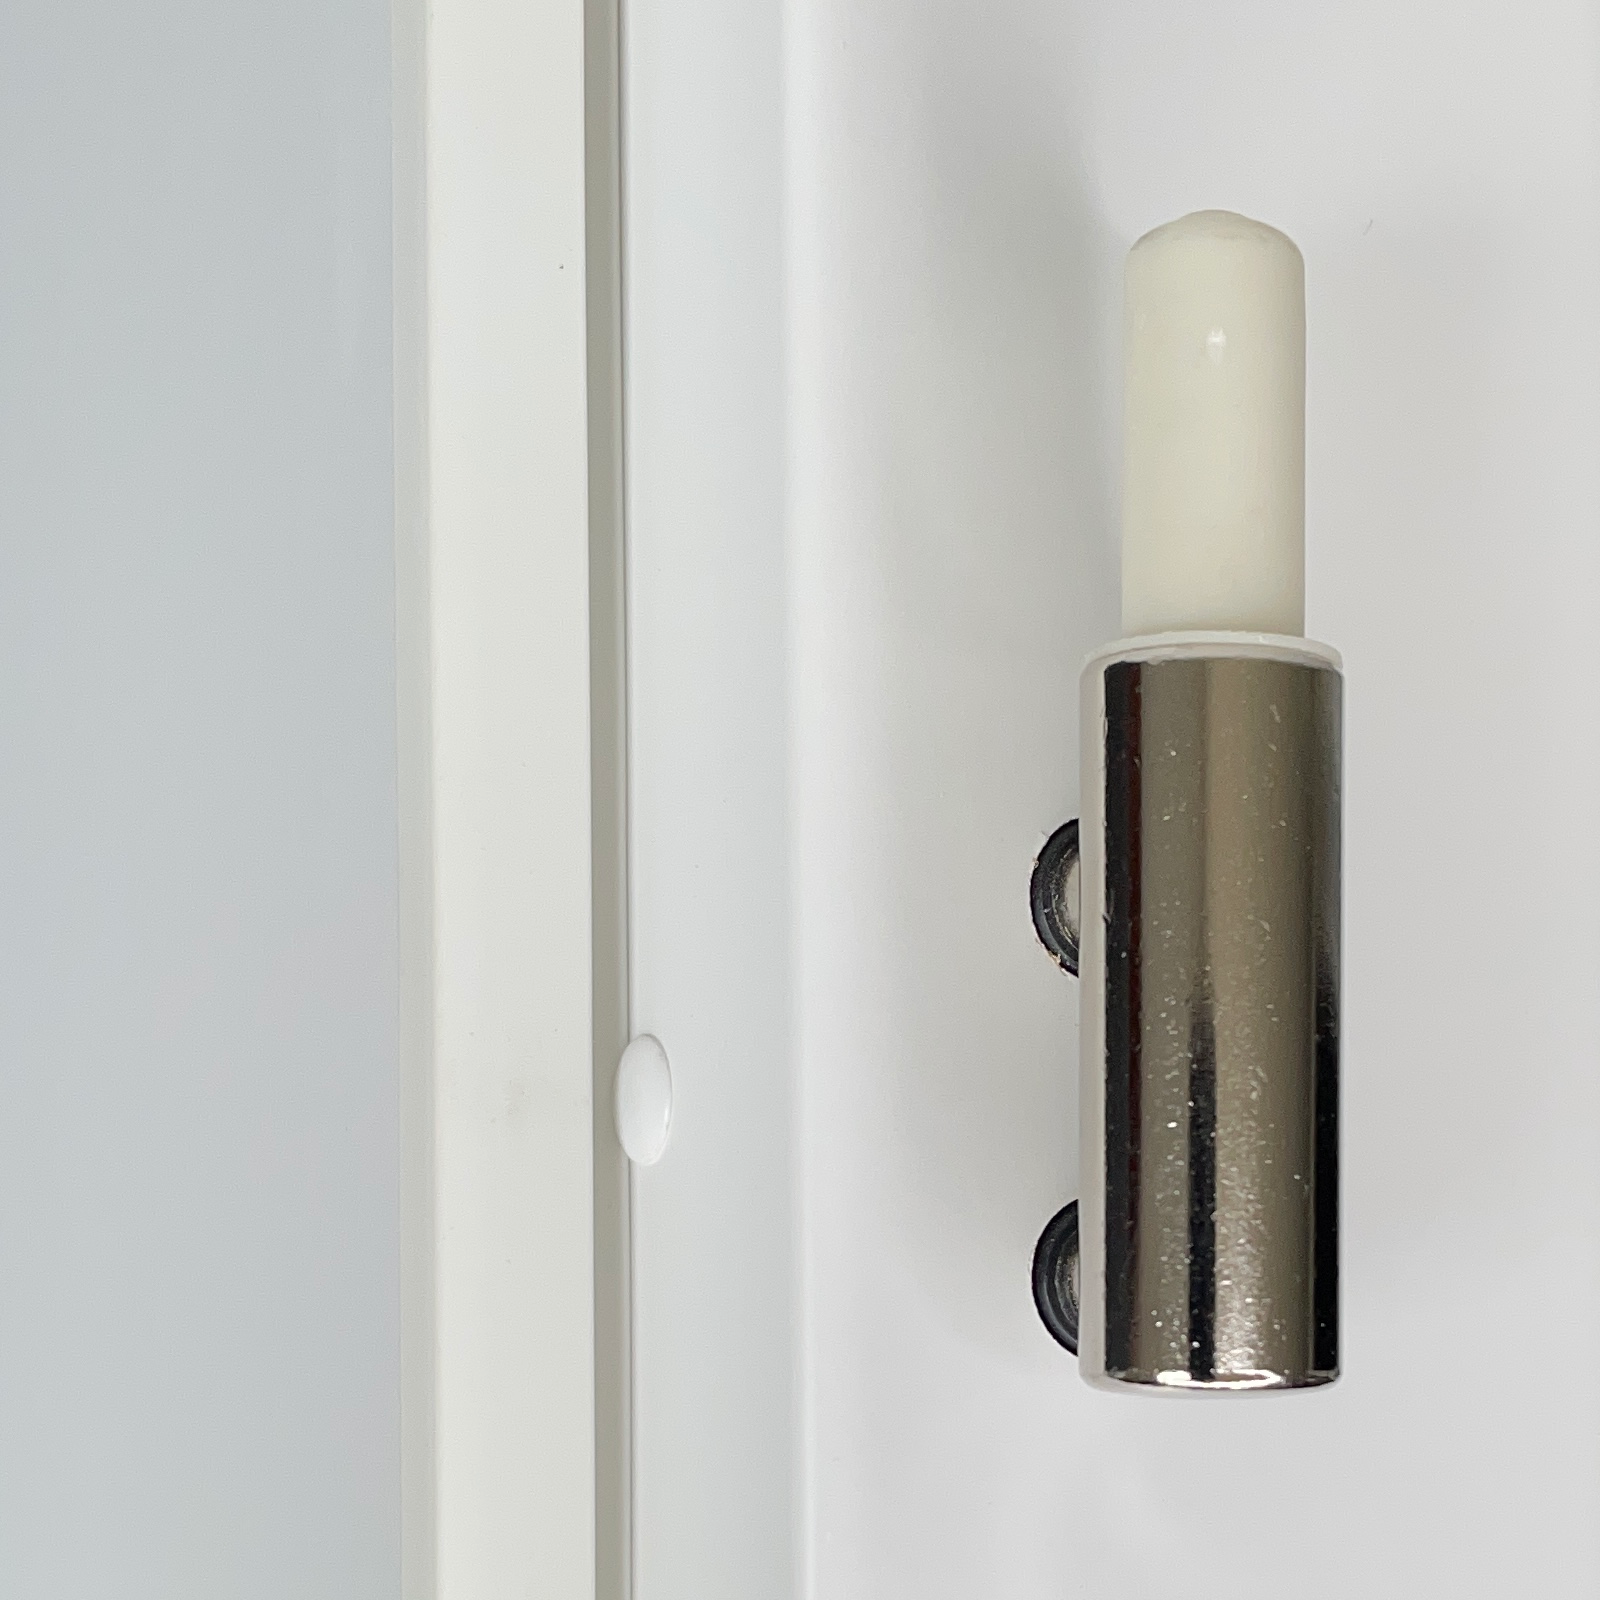 Zimmertür mit Zarge und Lichtausschnitt brillant-weiß 2 Kassetten Designkante - Modell Stiltür K23LA